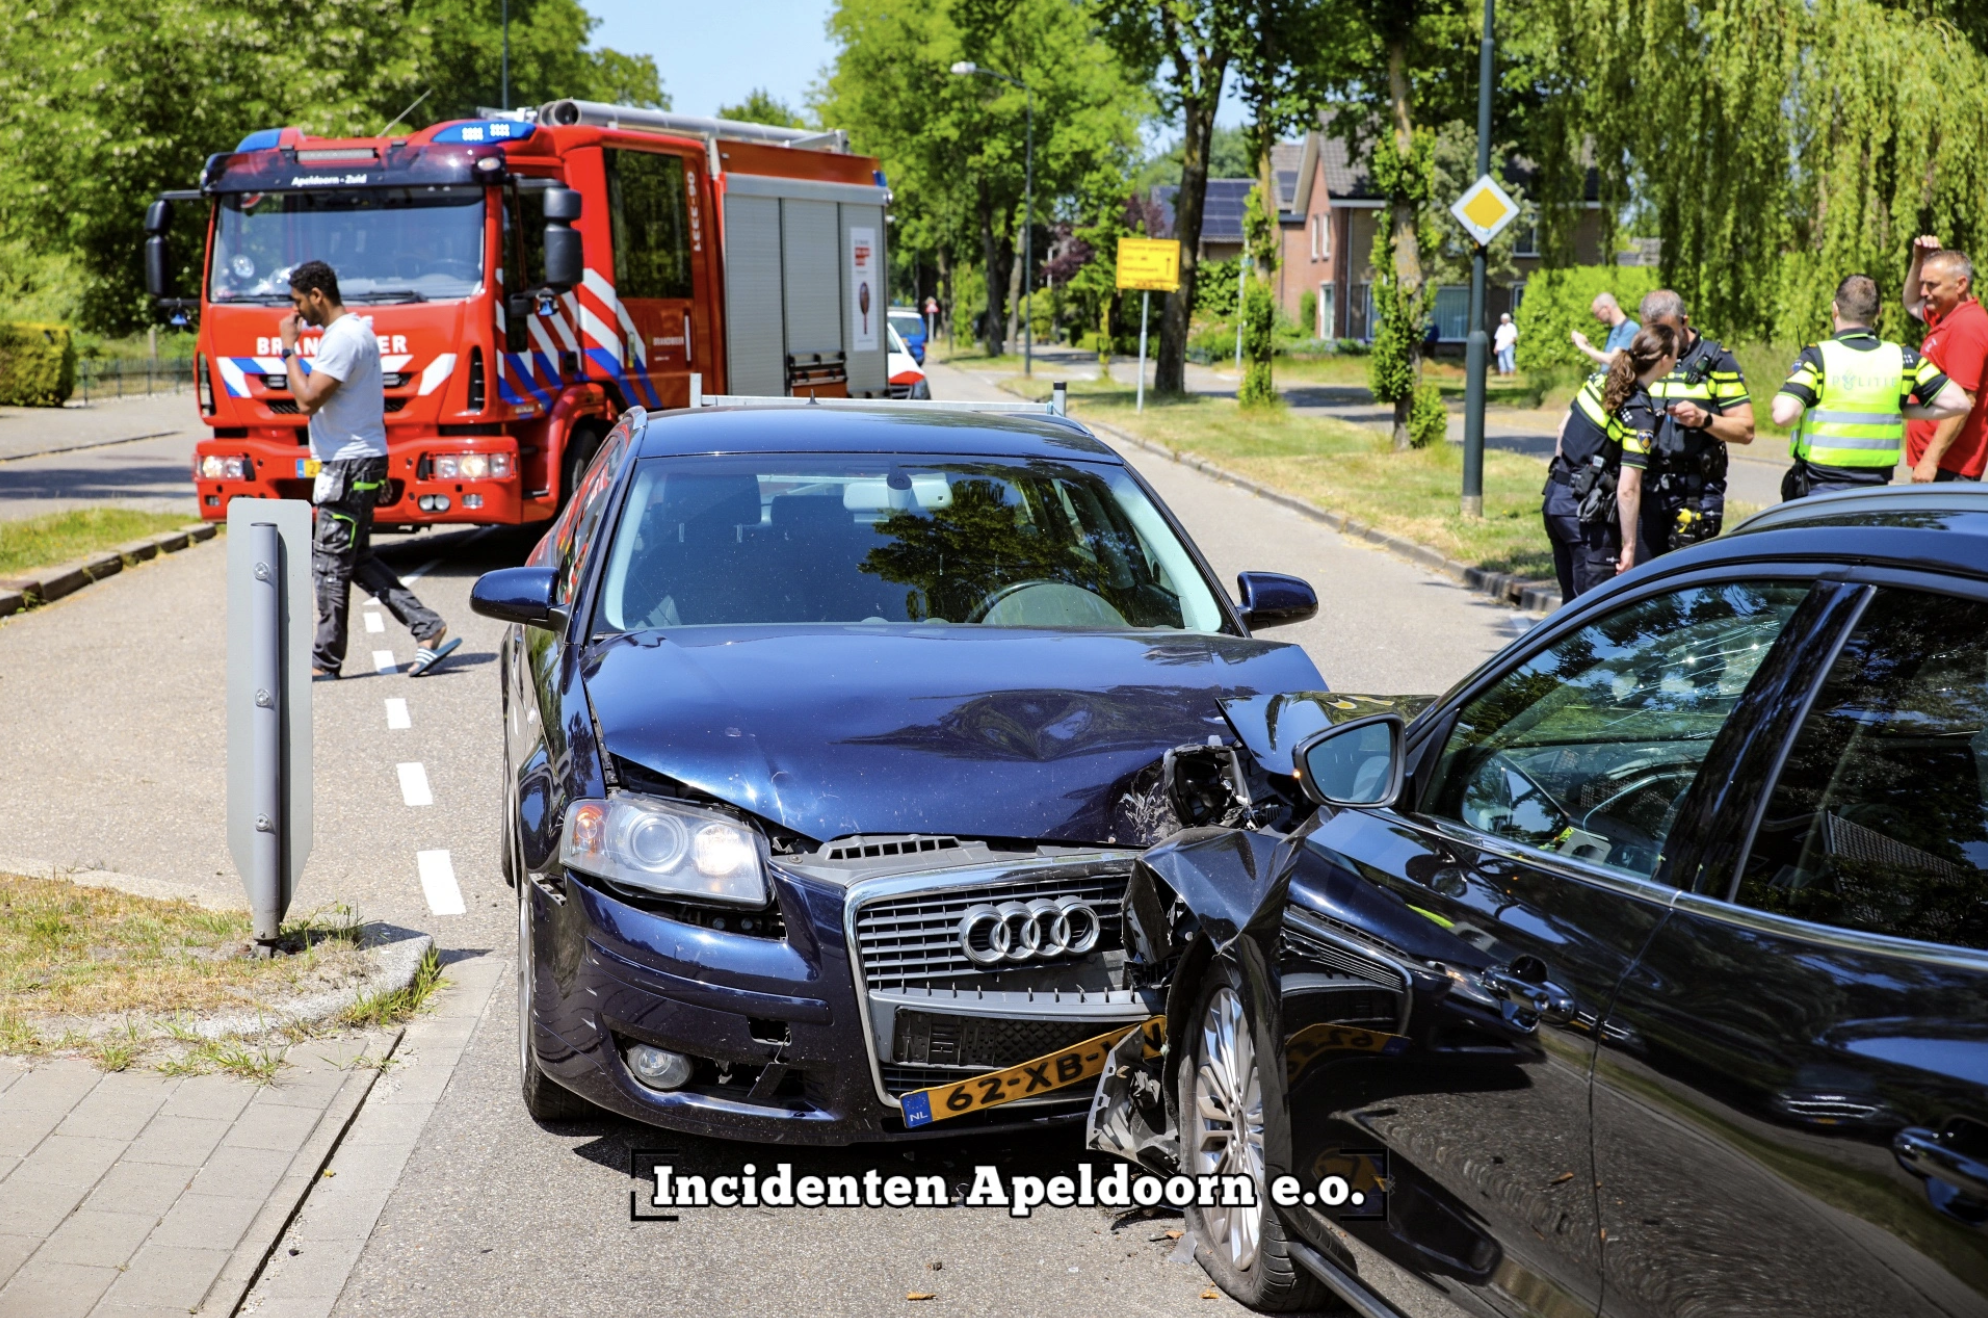 Auto’s botsen in wegversmalling Apeldoorn, één gewonde